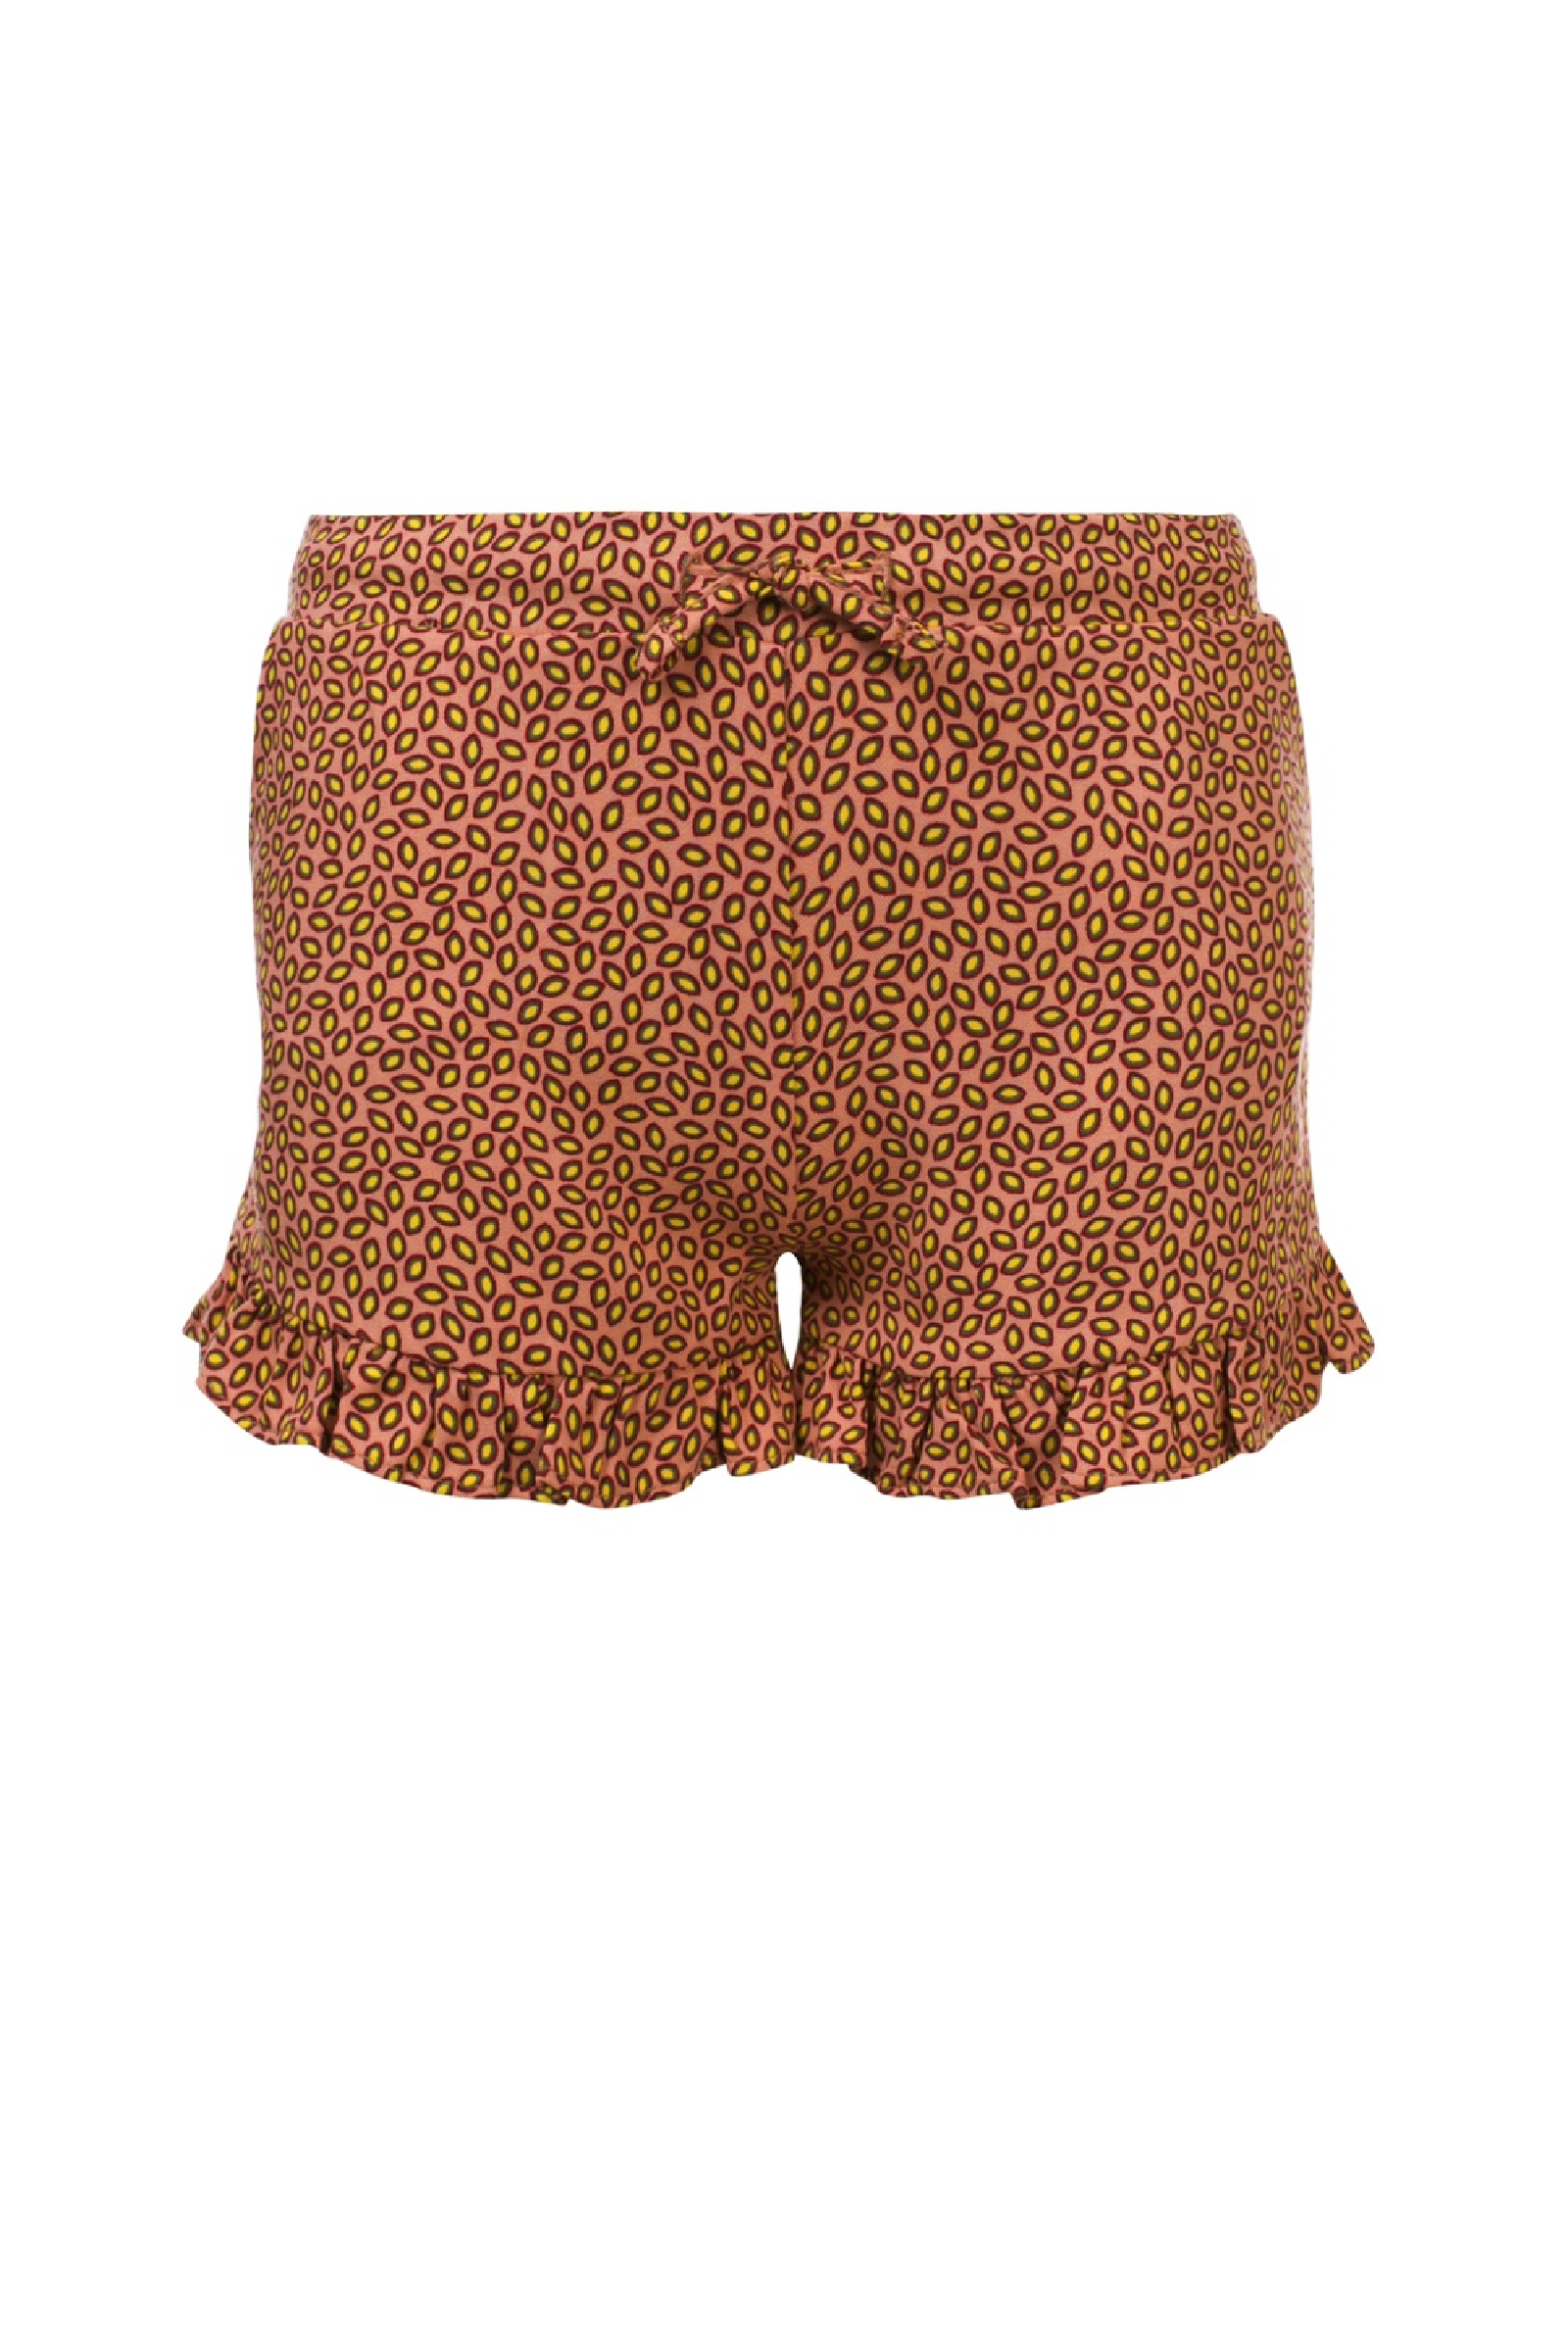 Meisjes Girls shorts van Looxs Revol. in de kleur Coral in maat 164.